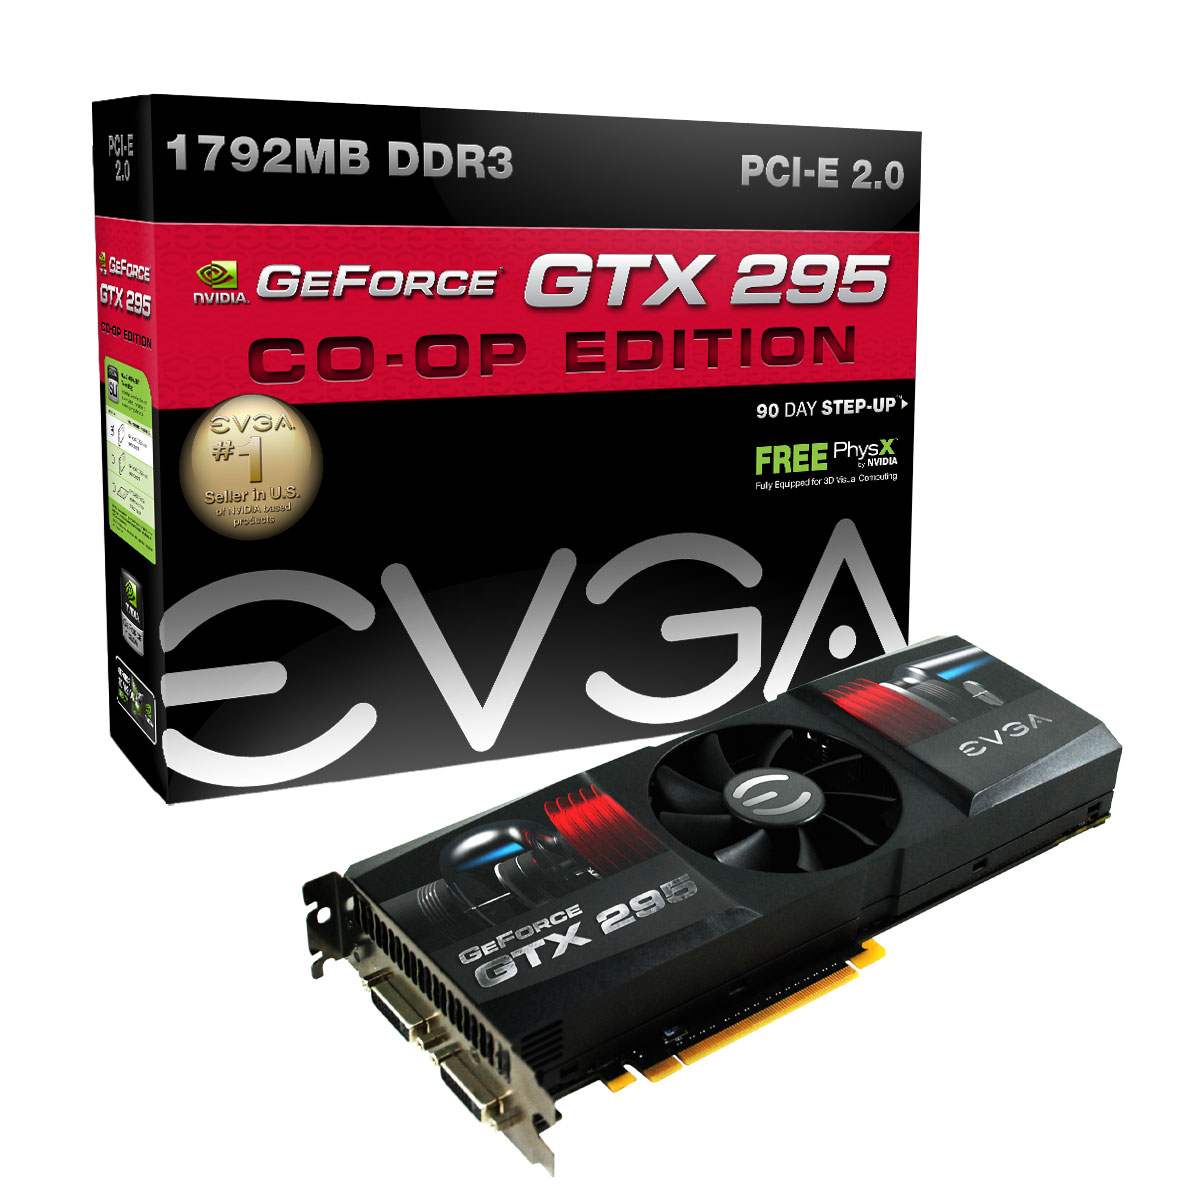 Immagine pubblicata in relazione al seguente contenuto: EVGA presenta la sua prima GeForce GTX 295 a PCB unico | Nome immagine: news10686_1.jpg